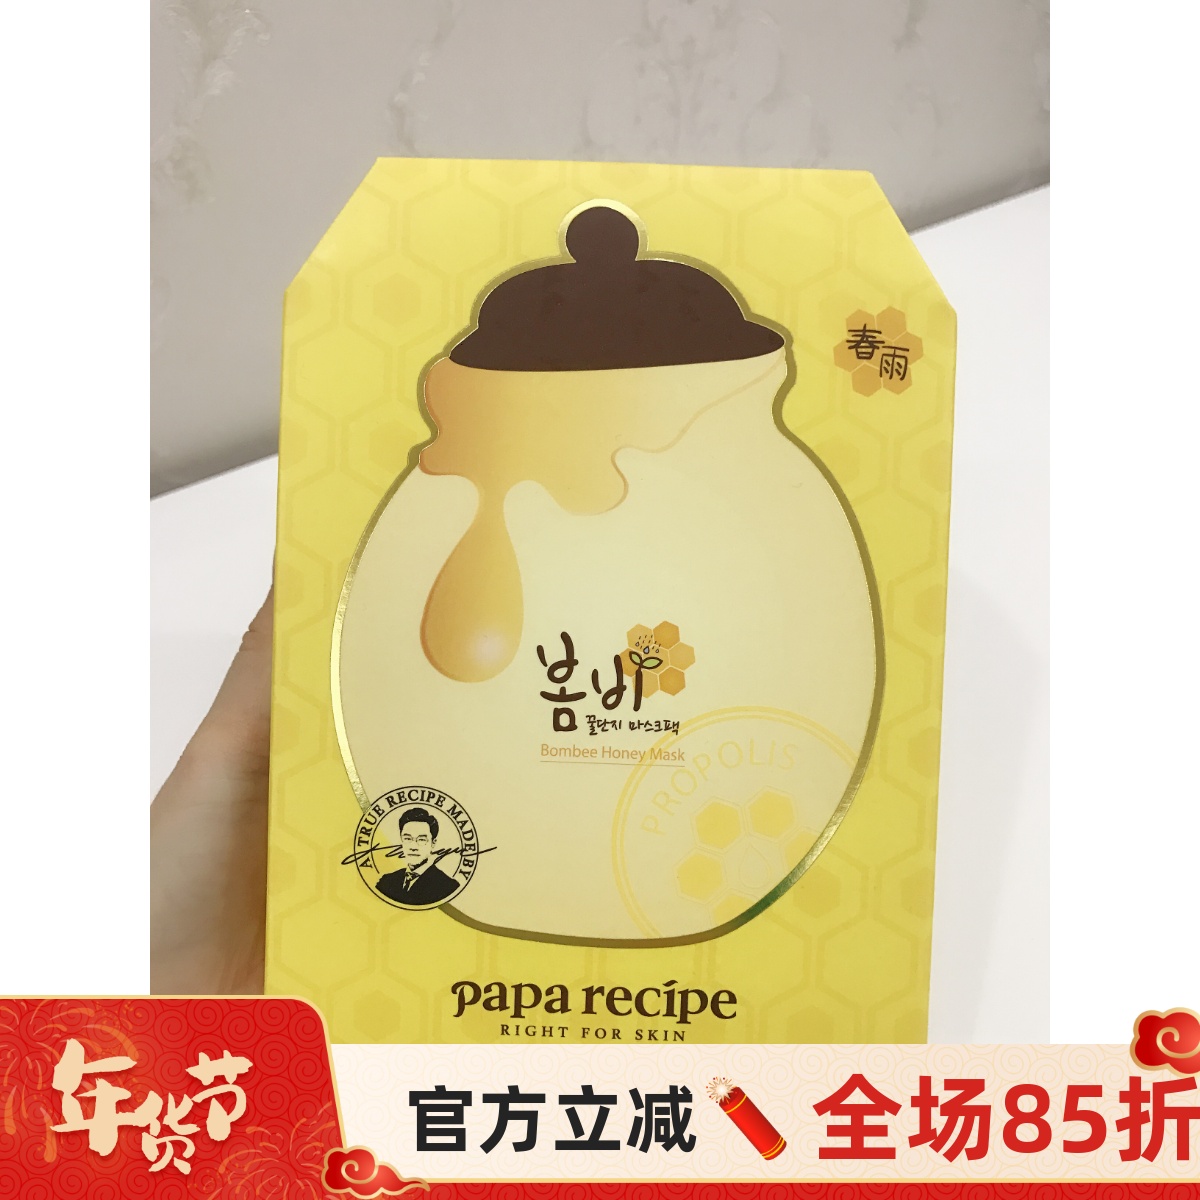 韩国papa recipe新版春雨黄蜂蜜补水保湿面膜 十片婷婷的自选小铺